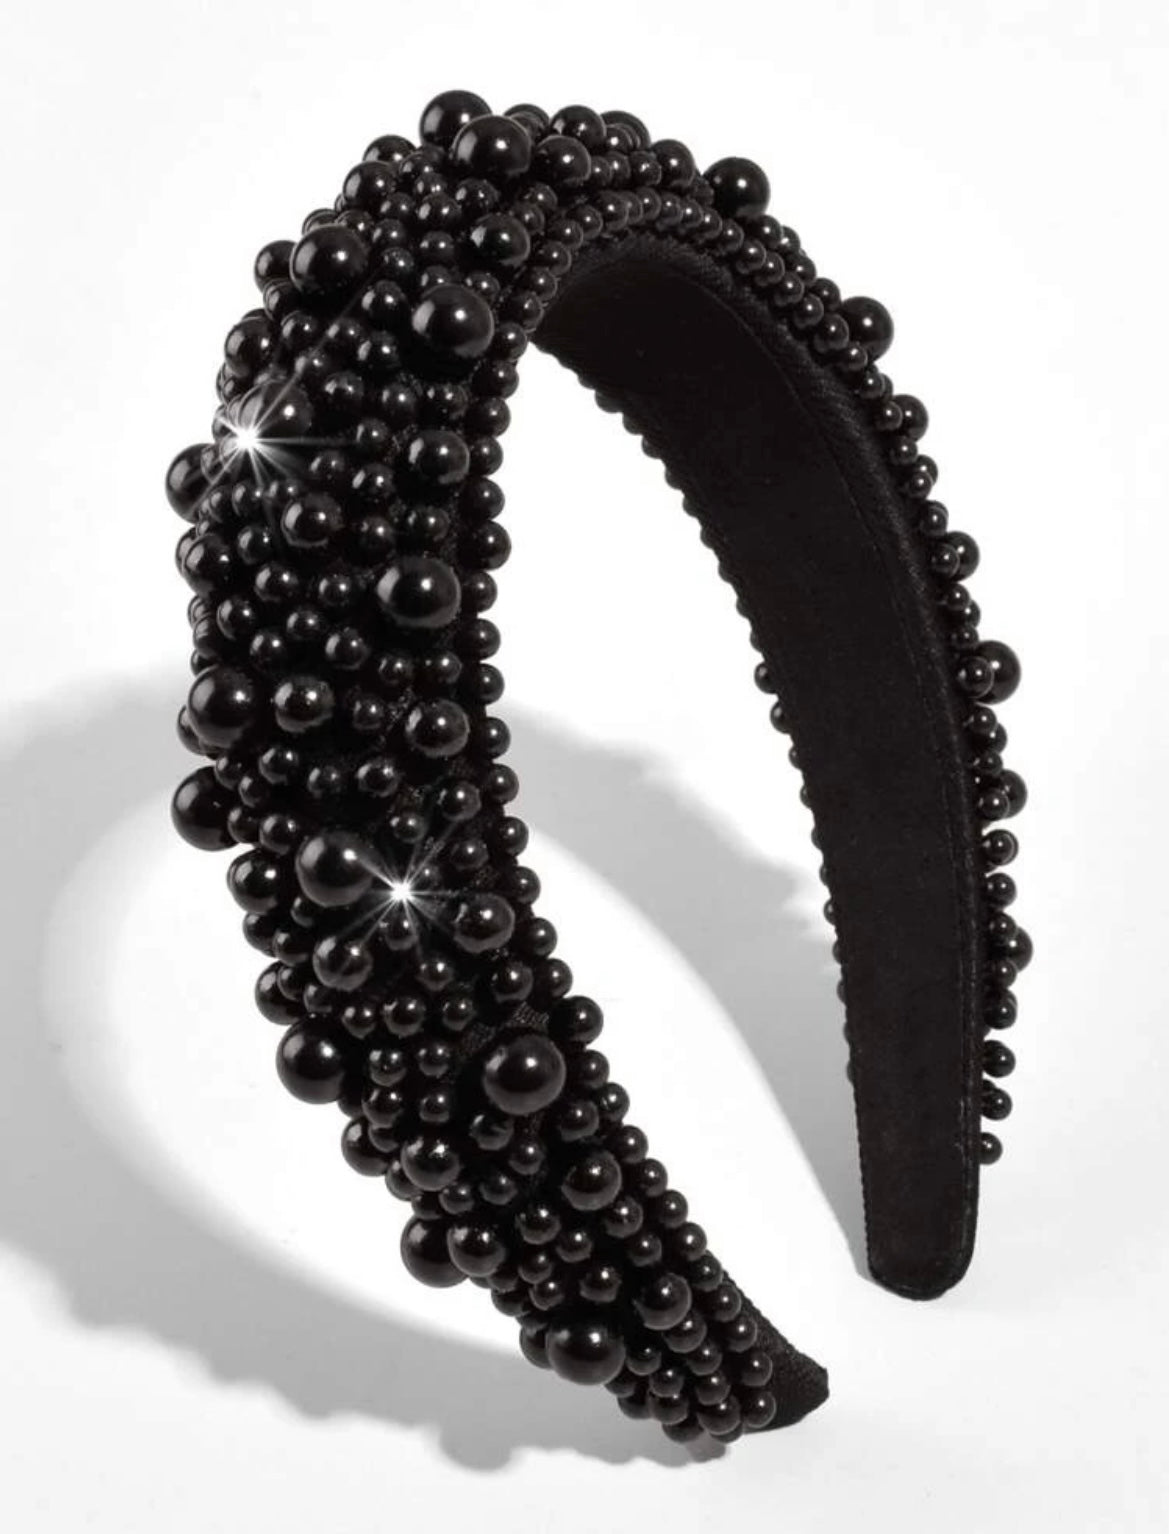 Black Beaded Headband